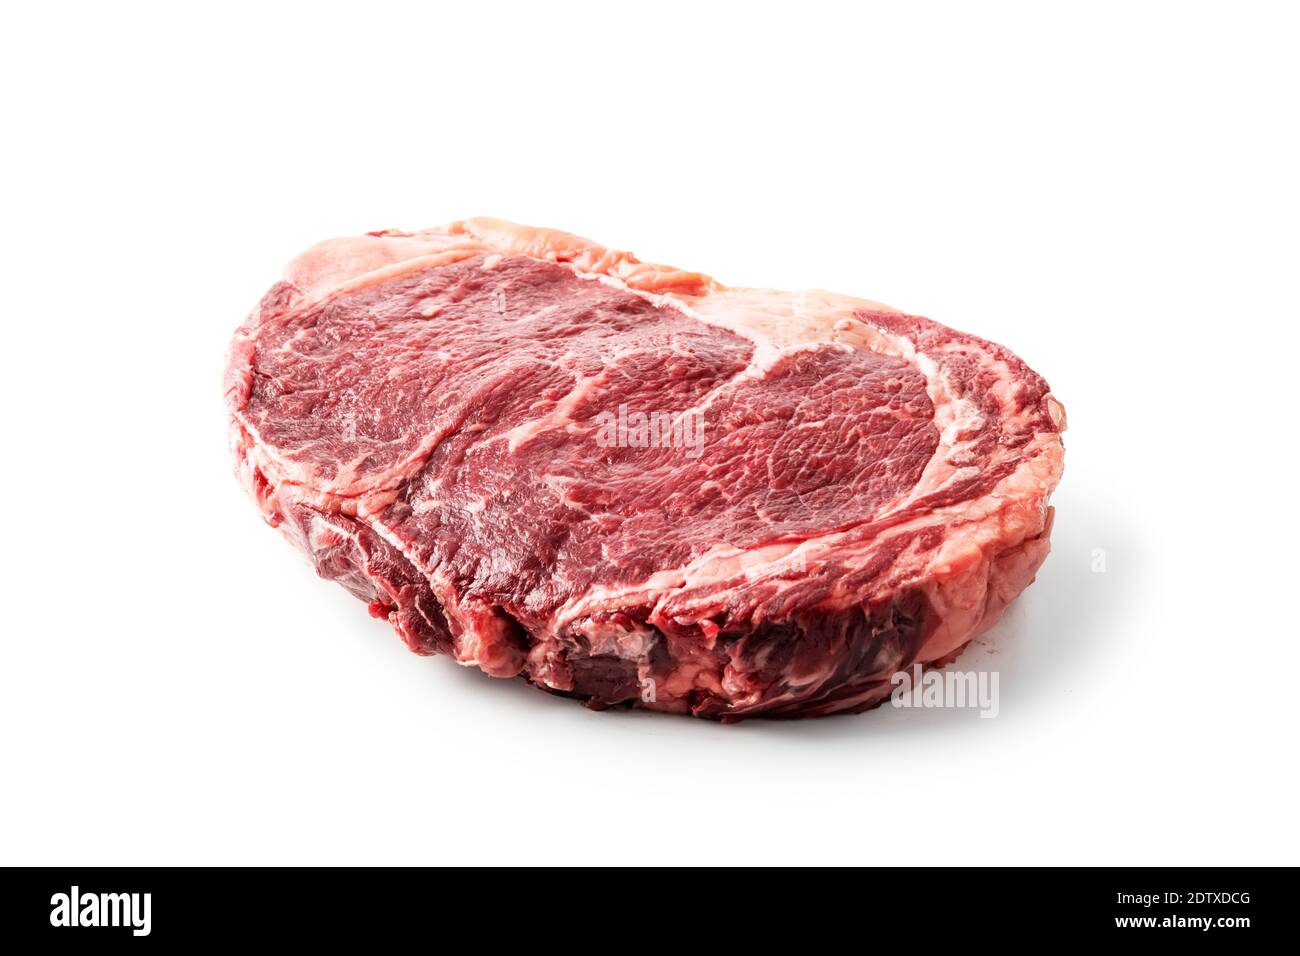 Marbling Ribeye Steak isoliert auf weißem Hintergrund. Prime Rib Beef Chop. Food-Fotografie Stockfoto